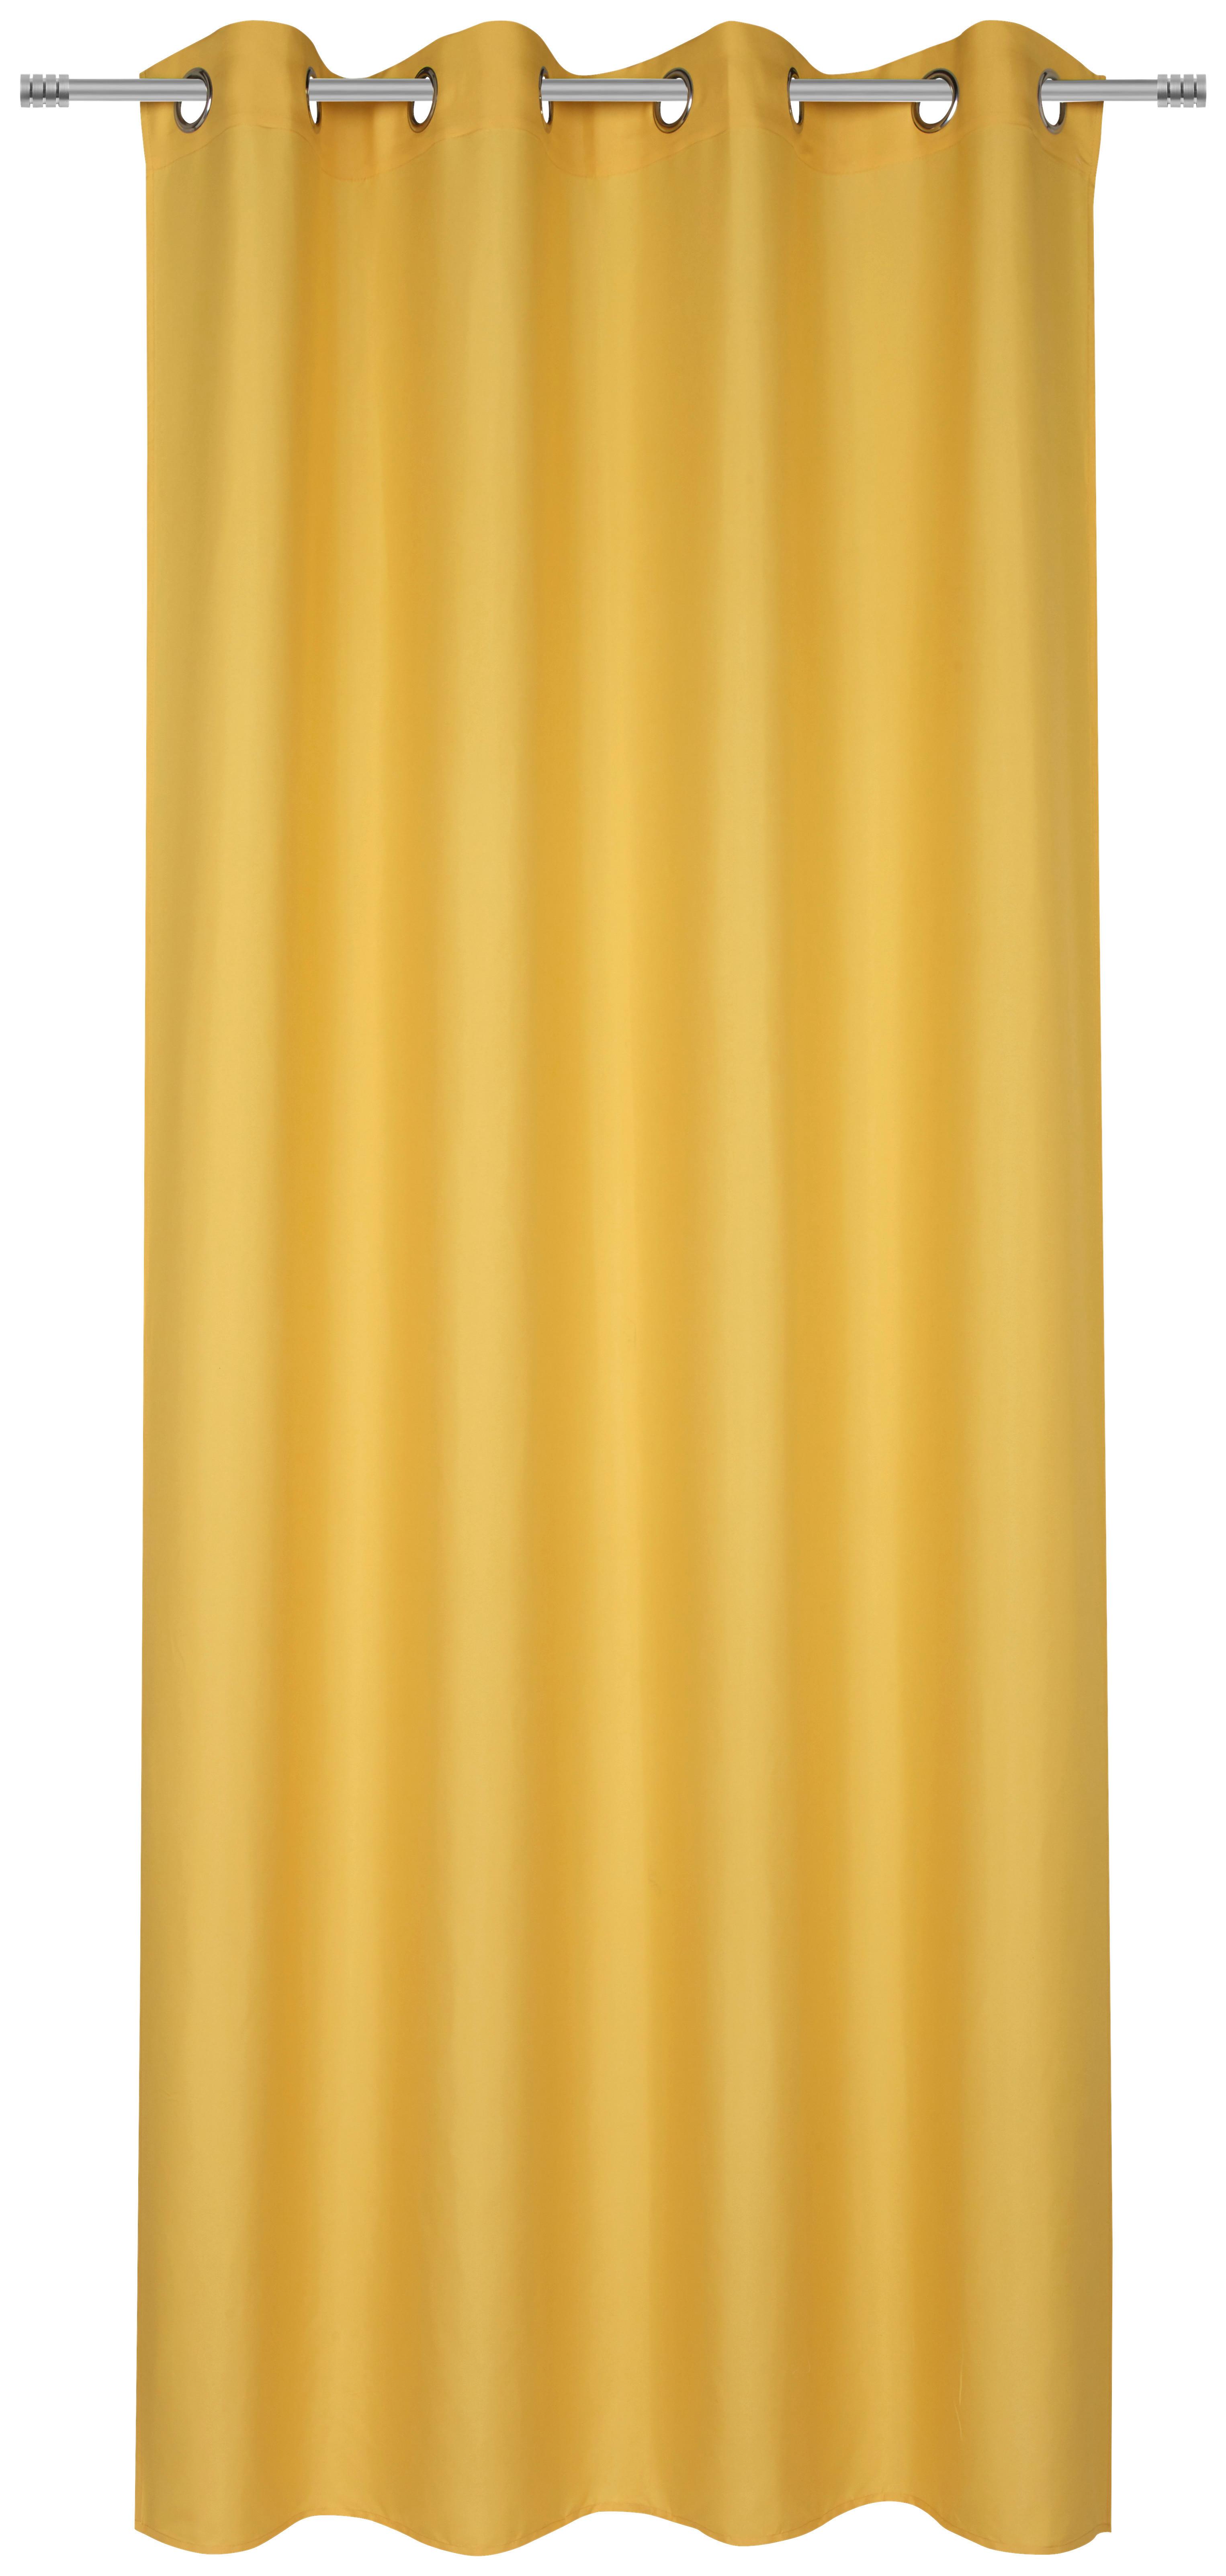 Ösenschal Abby in Gelb ca. 140x235cm - Gelb, KONVENTIONELL, Textil (140/235cm) - Modern Living